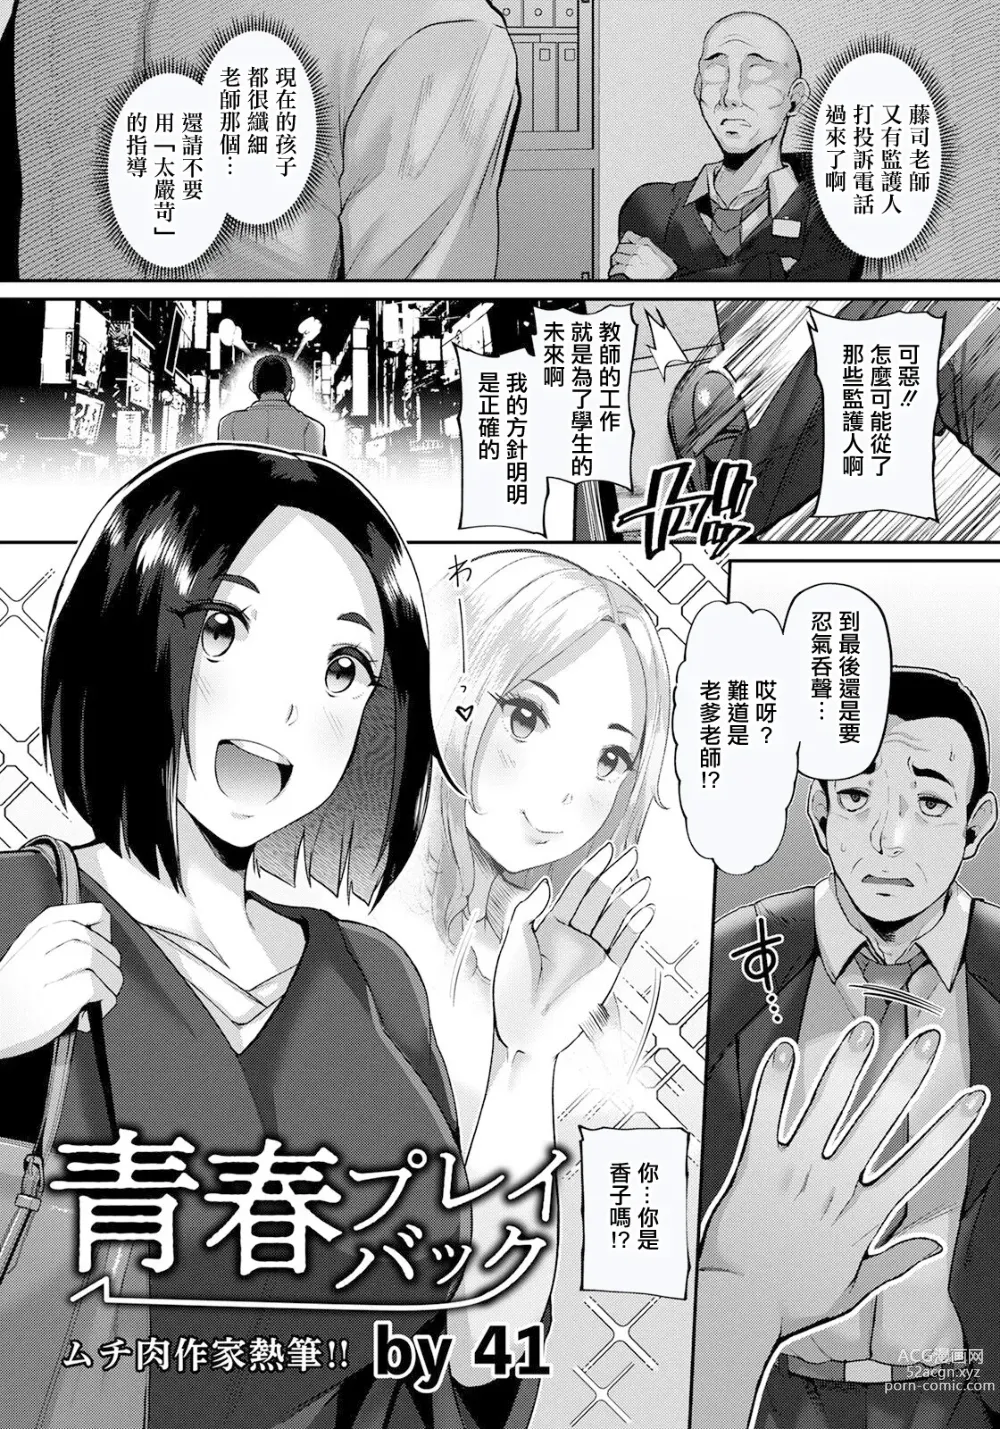 Page 1 of manga Seishun Playback